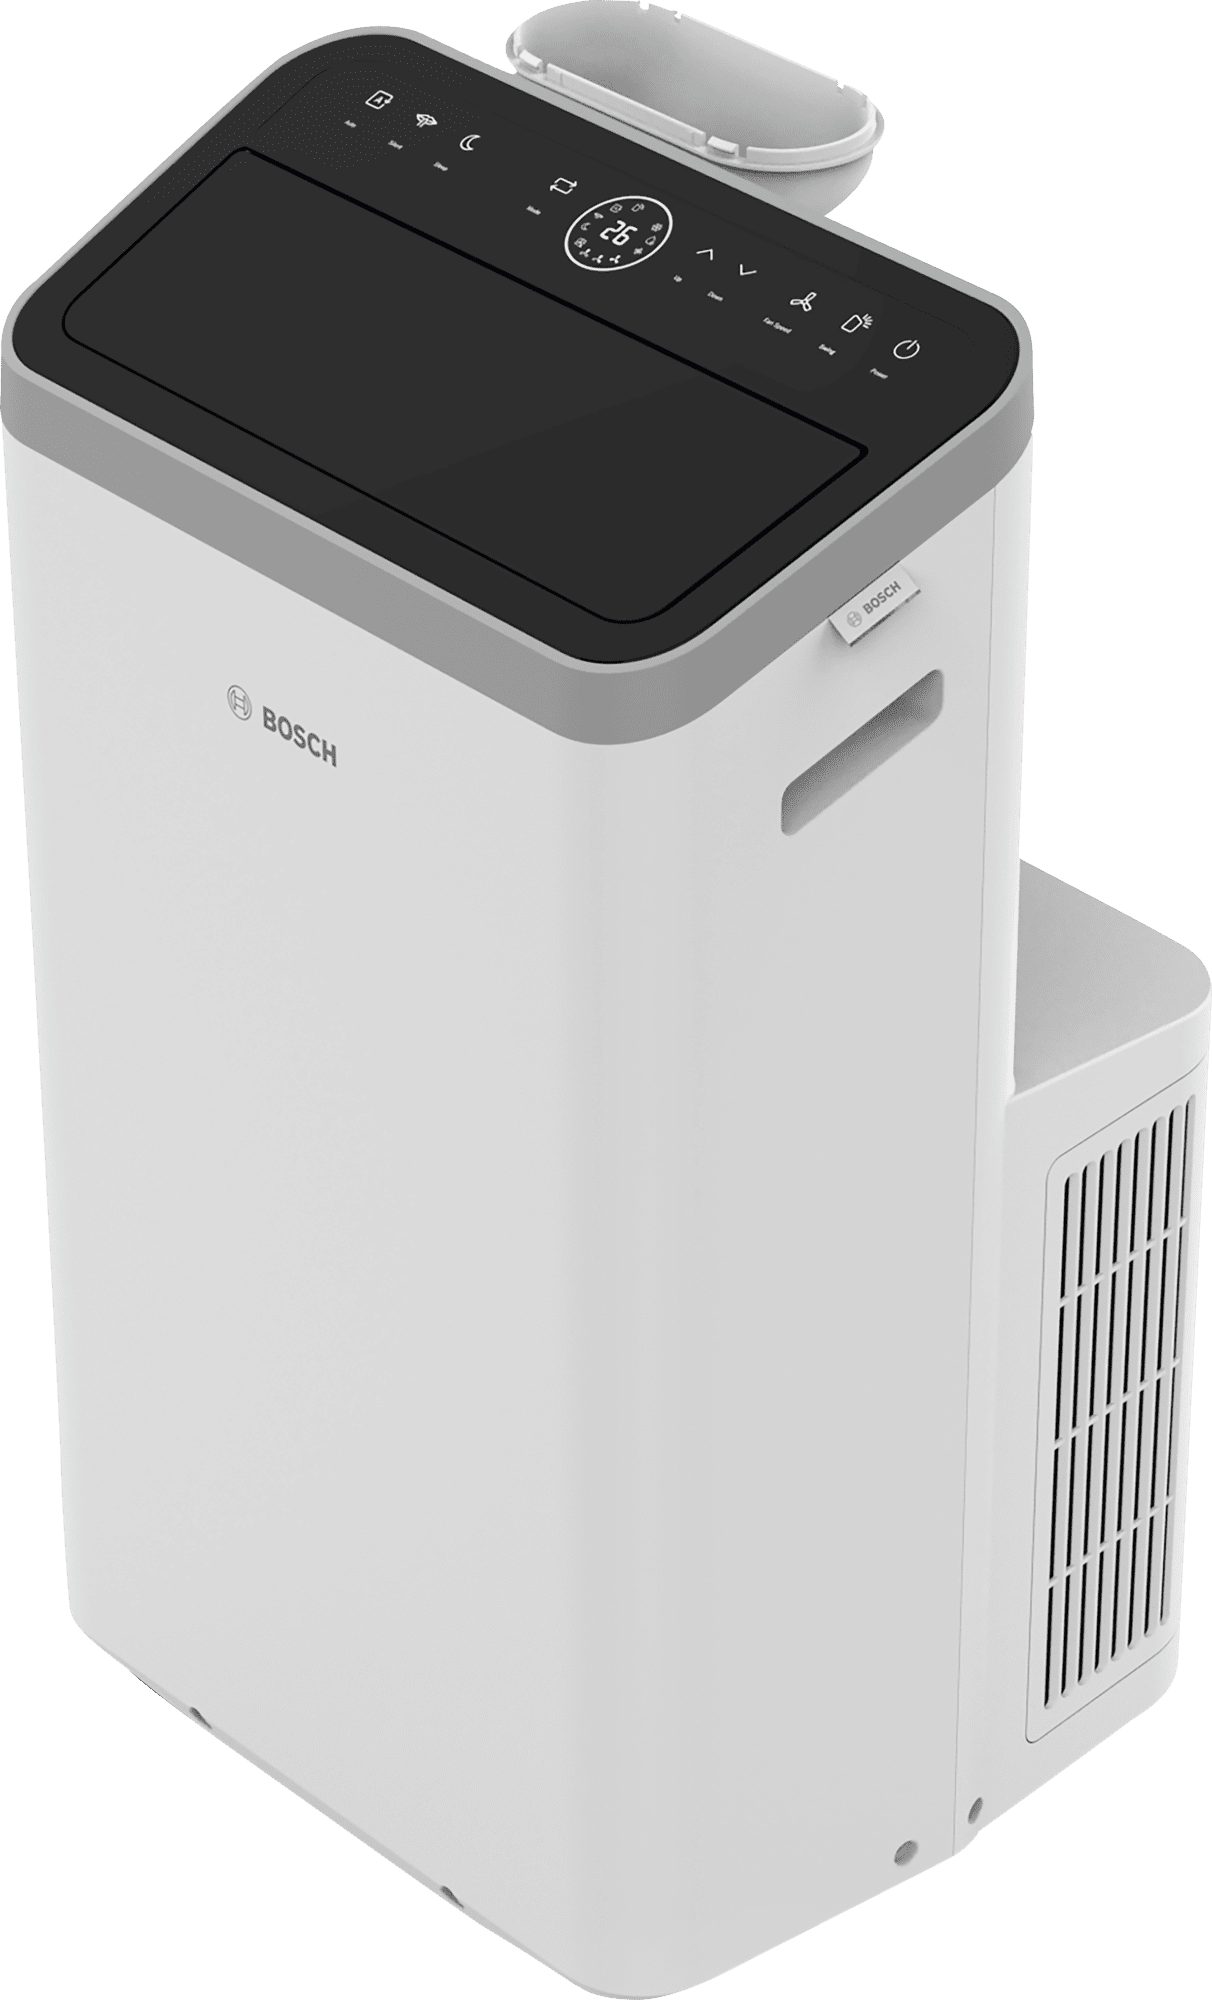 BOSCH Klimagerät Bosch Cool 4000 Mobiles Klimagerät zur Kühlung